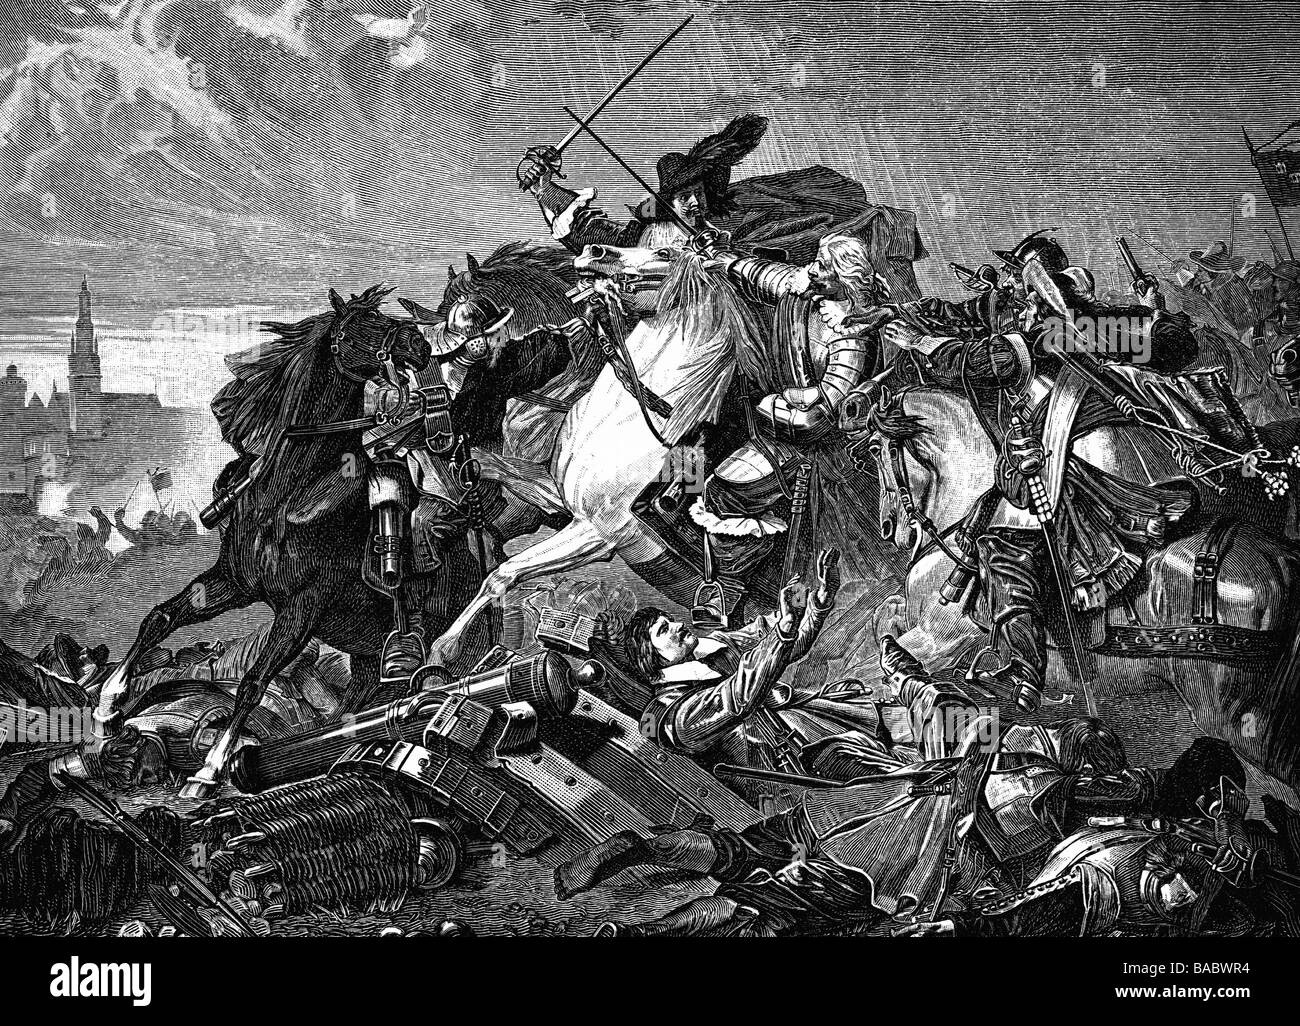 Horn, Gustav, 22.10.1592 - 10.5.1657, général suédois, capturé par la cavalerie bavaroise pendant la bataille de Noerdlingen, 6.9.1634, gravure sur bois, XIXe siècle, , Banque D'Images